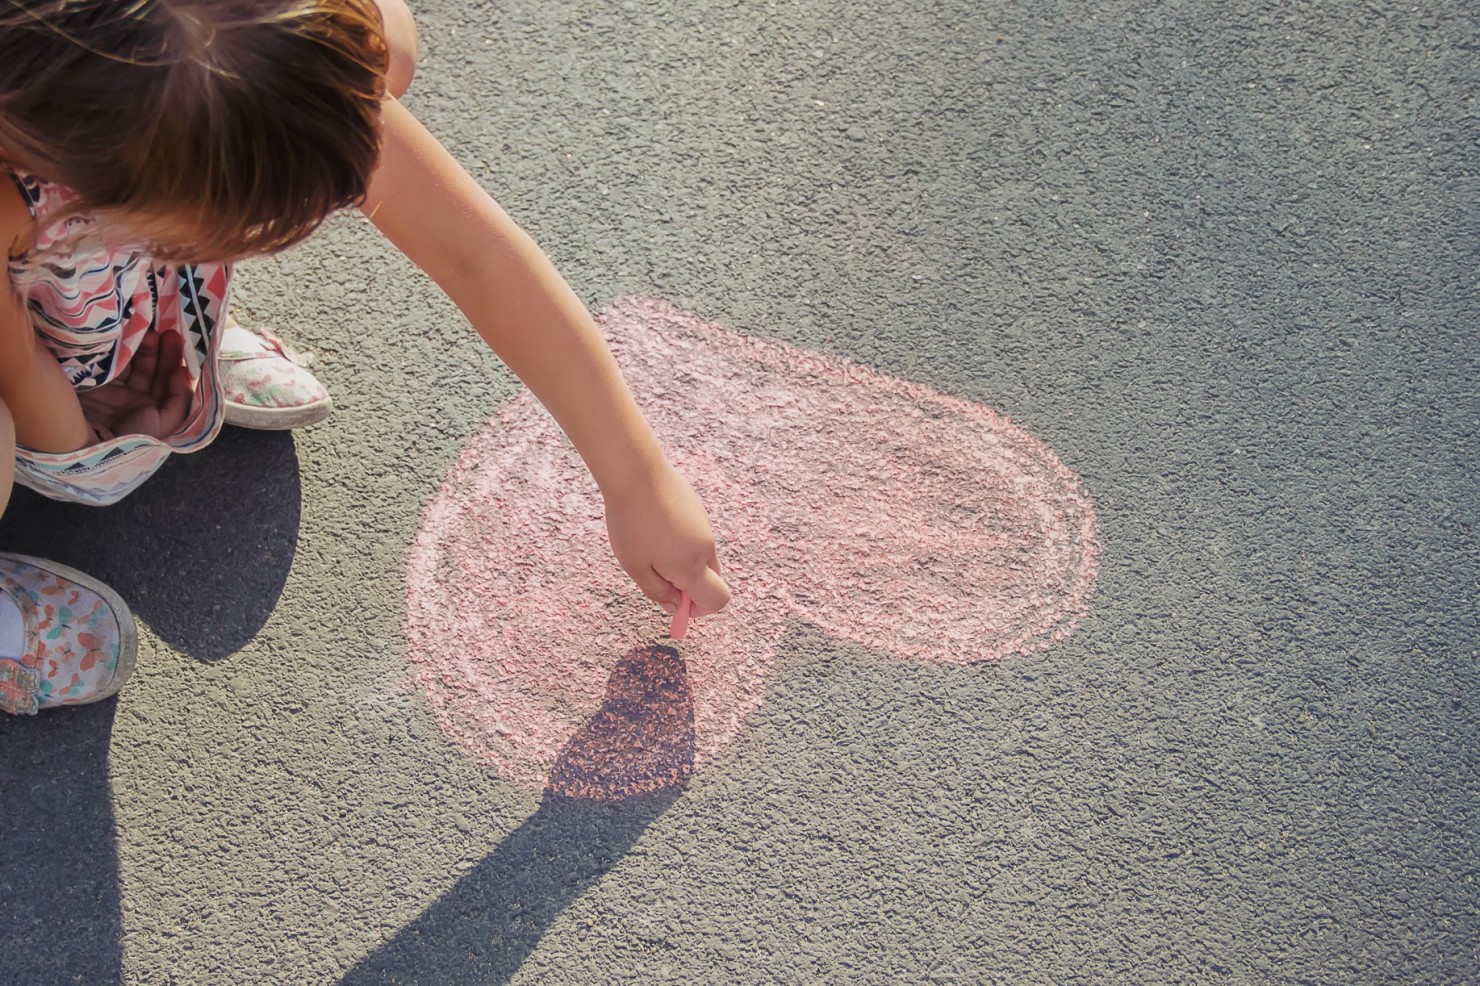 Ein kleines Mädchen, circa 7 Jahre alt, malt mit rosa Kreide ein Herz auf den Asphalt.